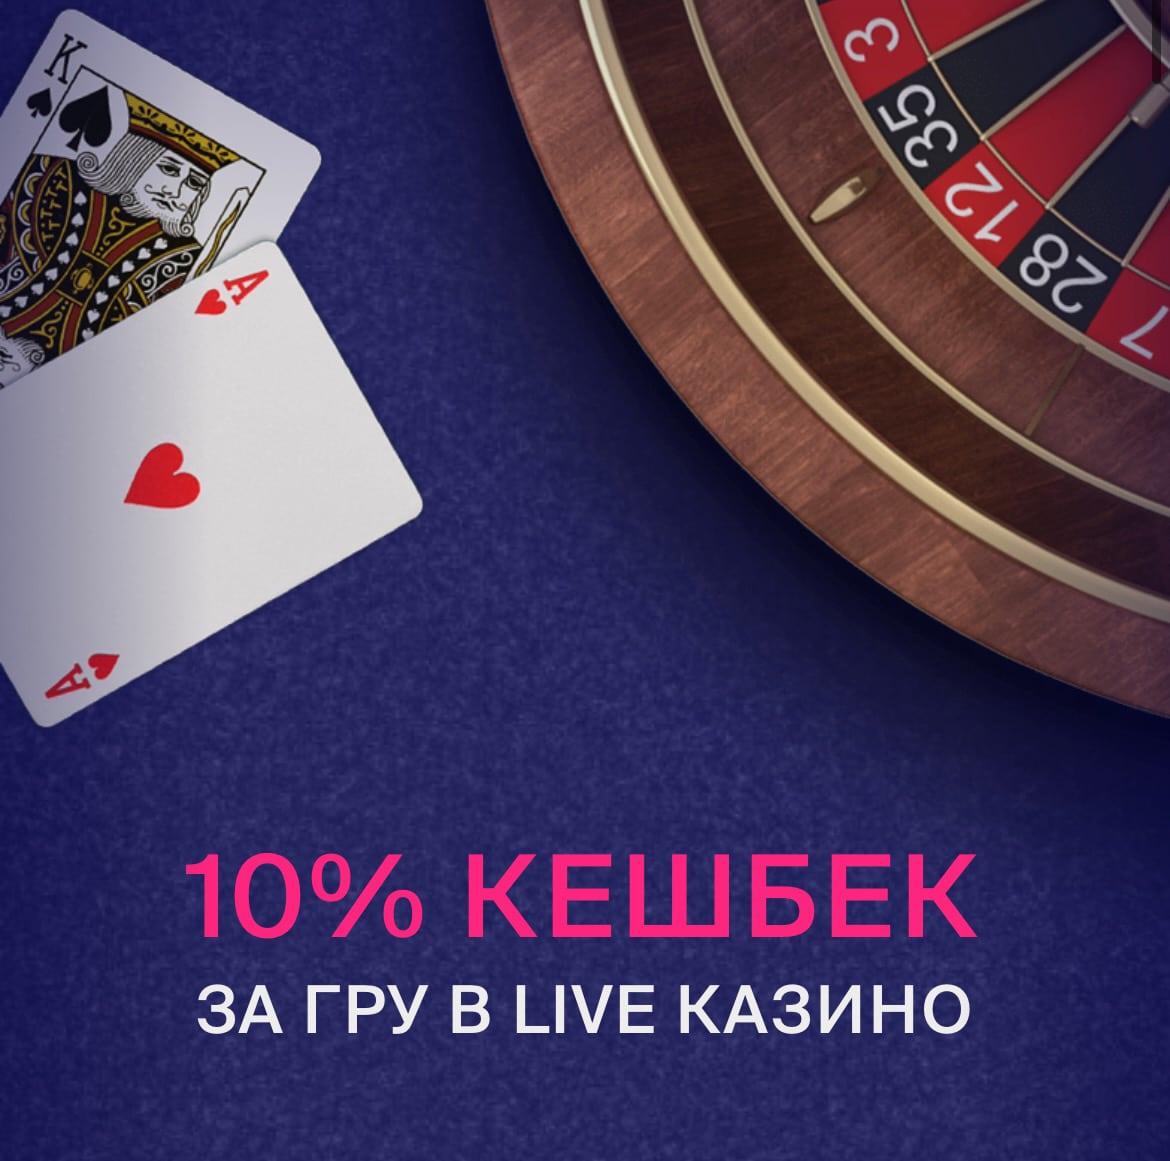 Keshbek для рекламного коду Favbet у казино